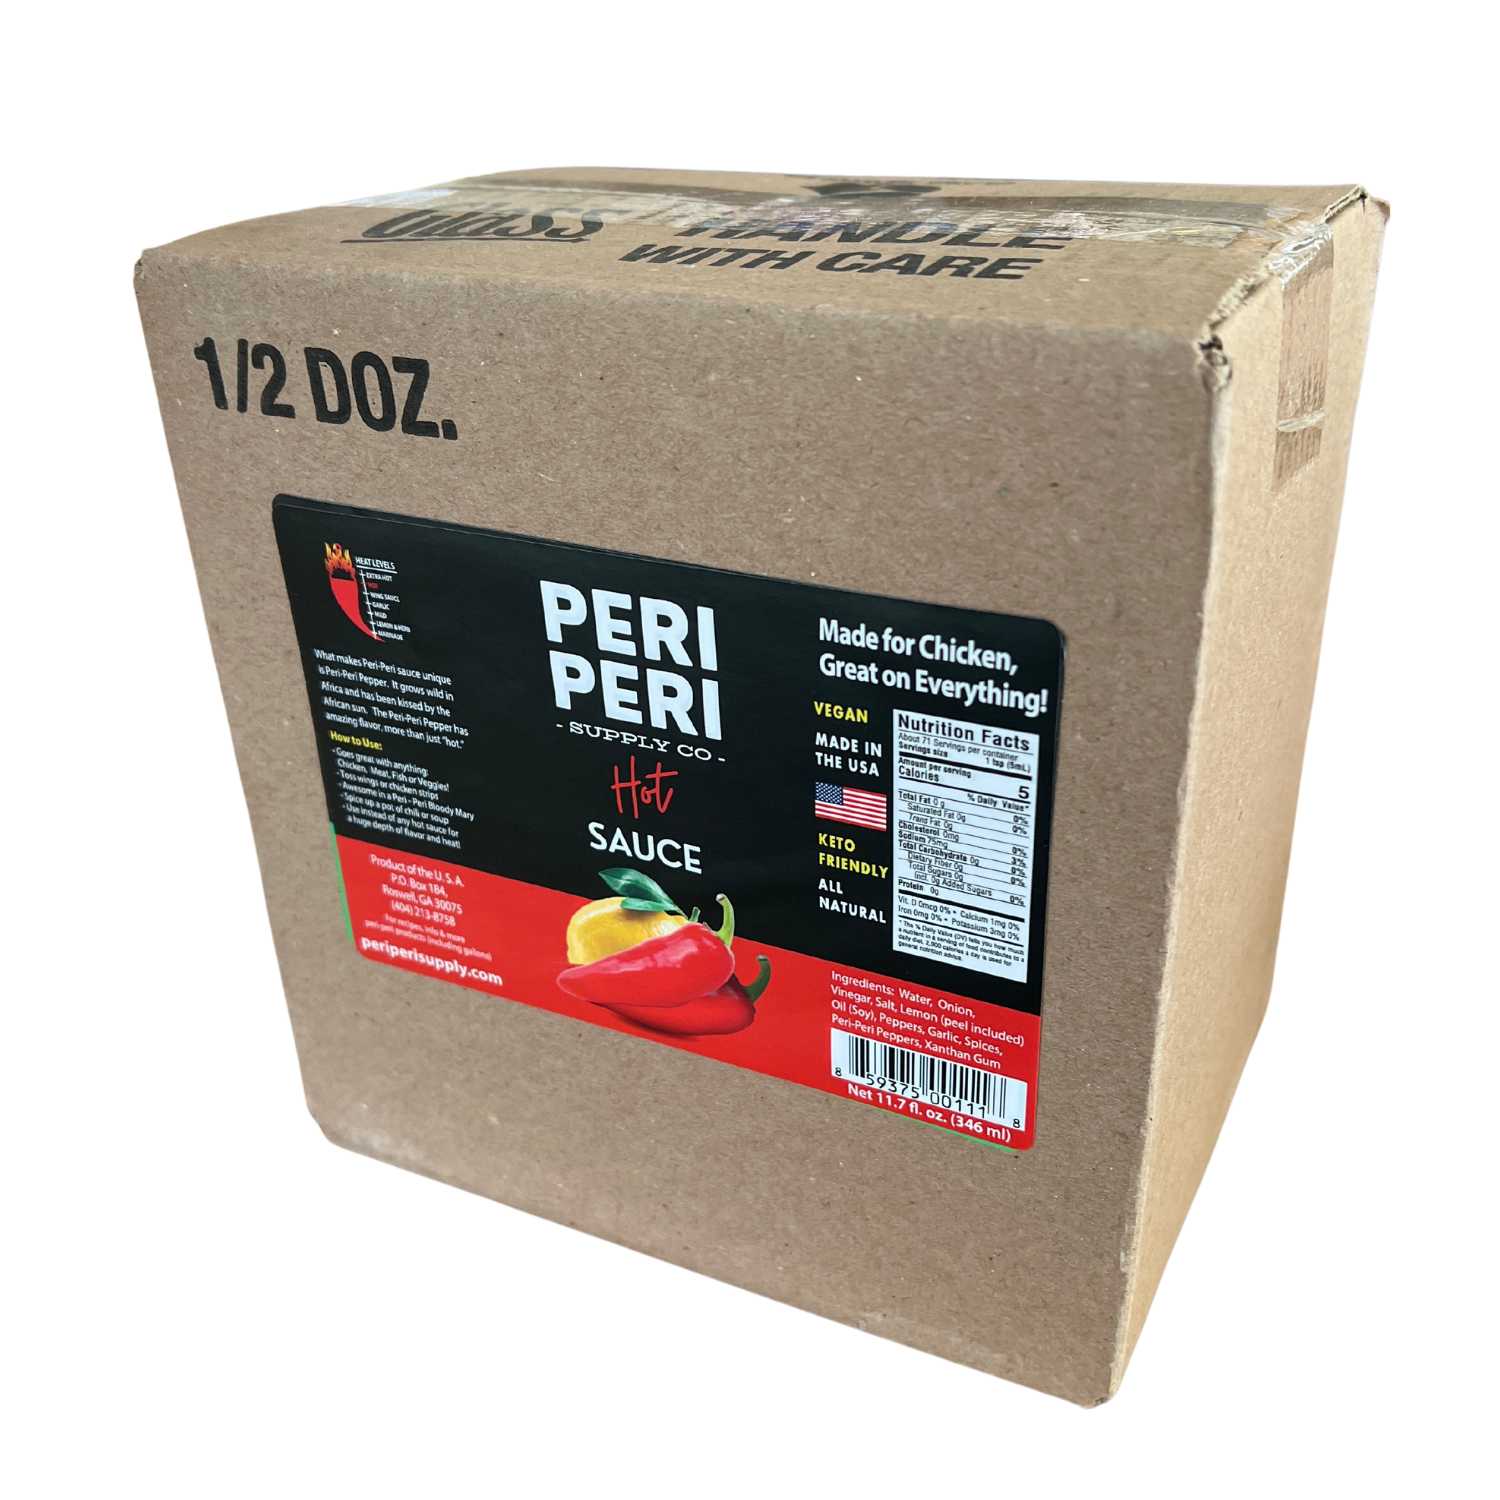 Hot Peri Peri sauce - The Peri Peri Standard- Vegan, Gluten Free, Sugar Free, Made in America, Keto and Paleo Friendly